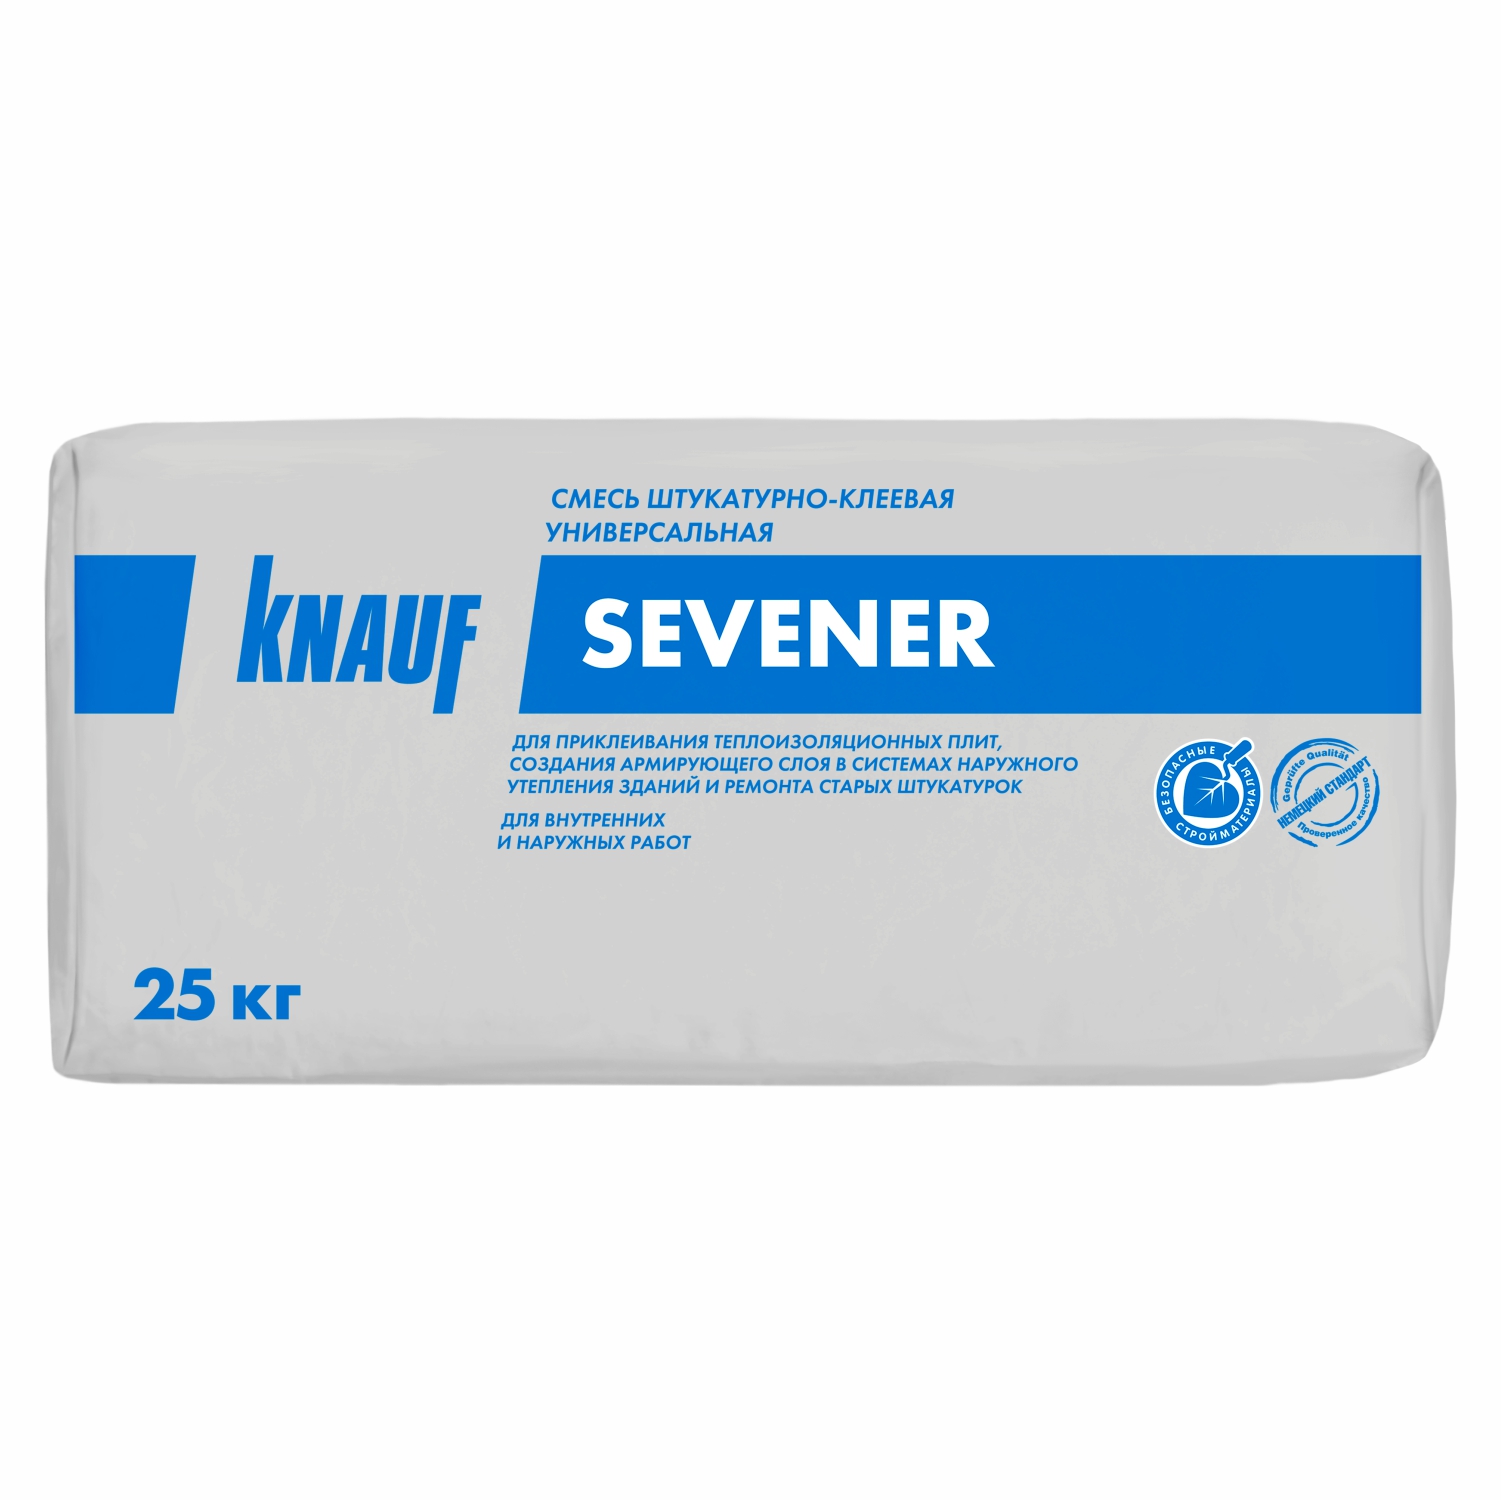 Смесь штукатурно-клеевая Knauf SEVENER (Севенер), 25 кг